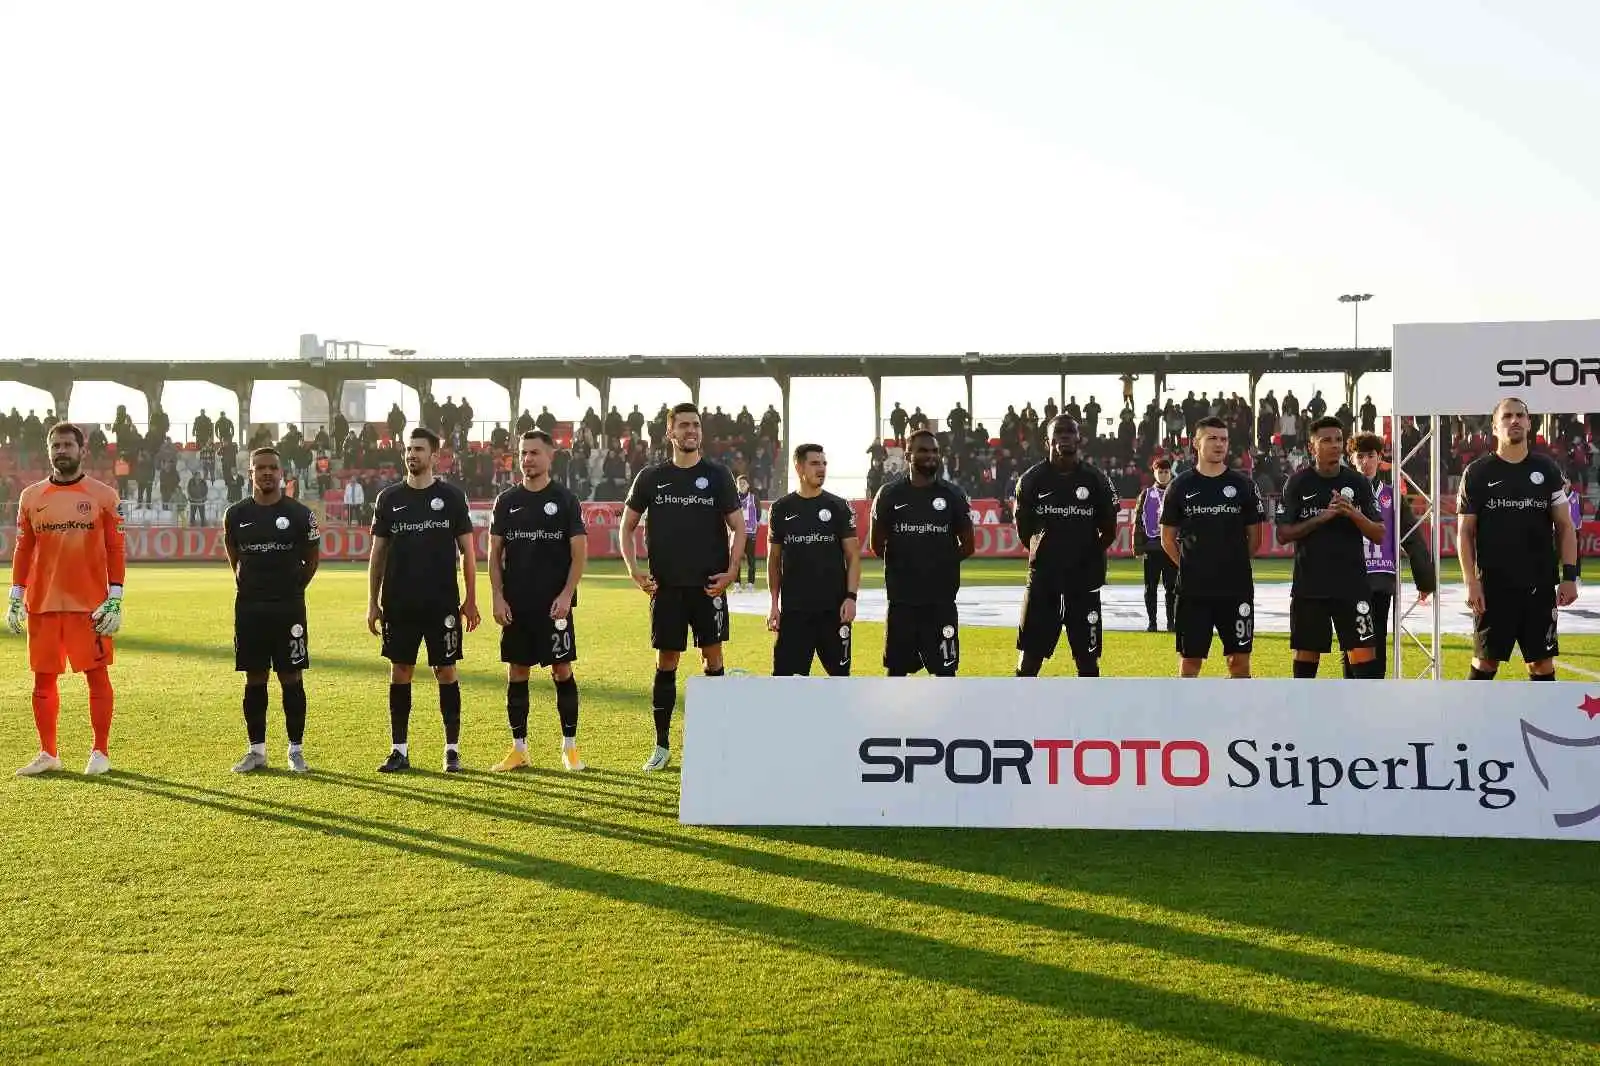 Spor Toto Süper Lig: Ümraniyespor: 0 - Hatayspor: 1 (Maç devam ediyor)
